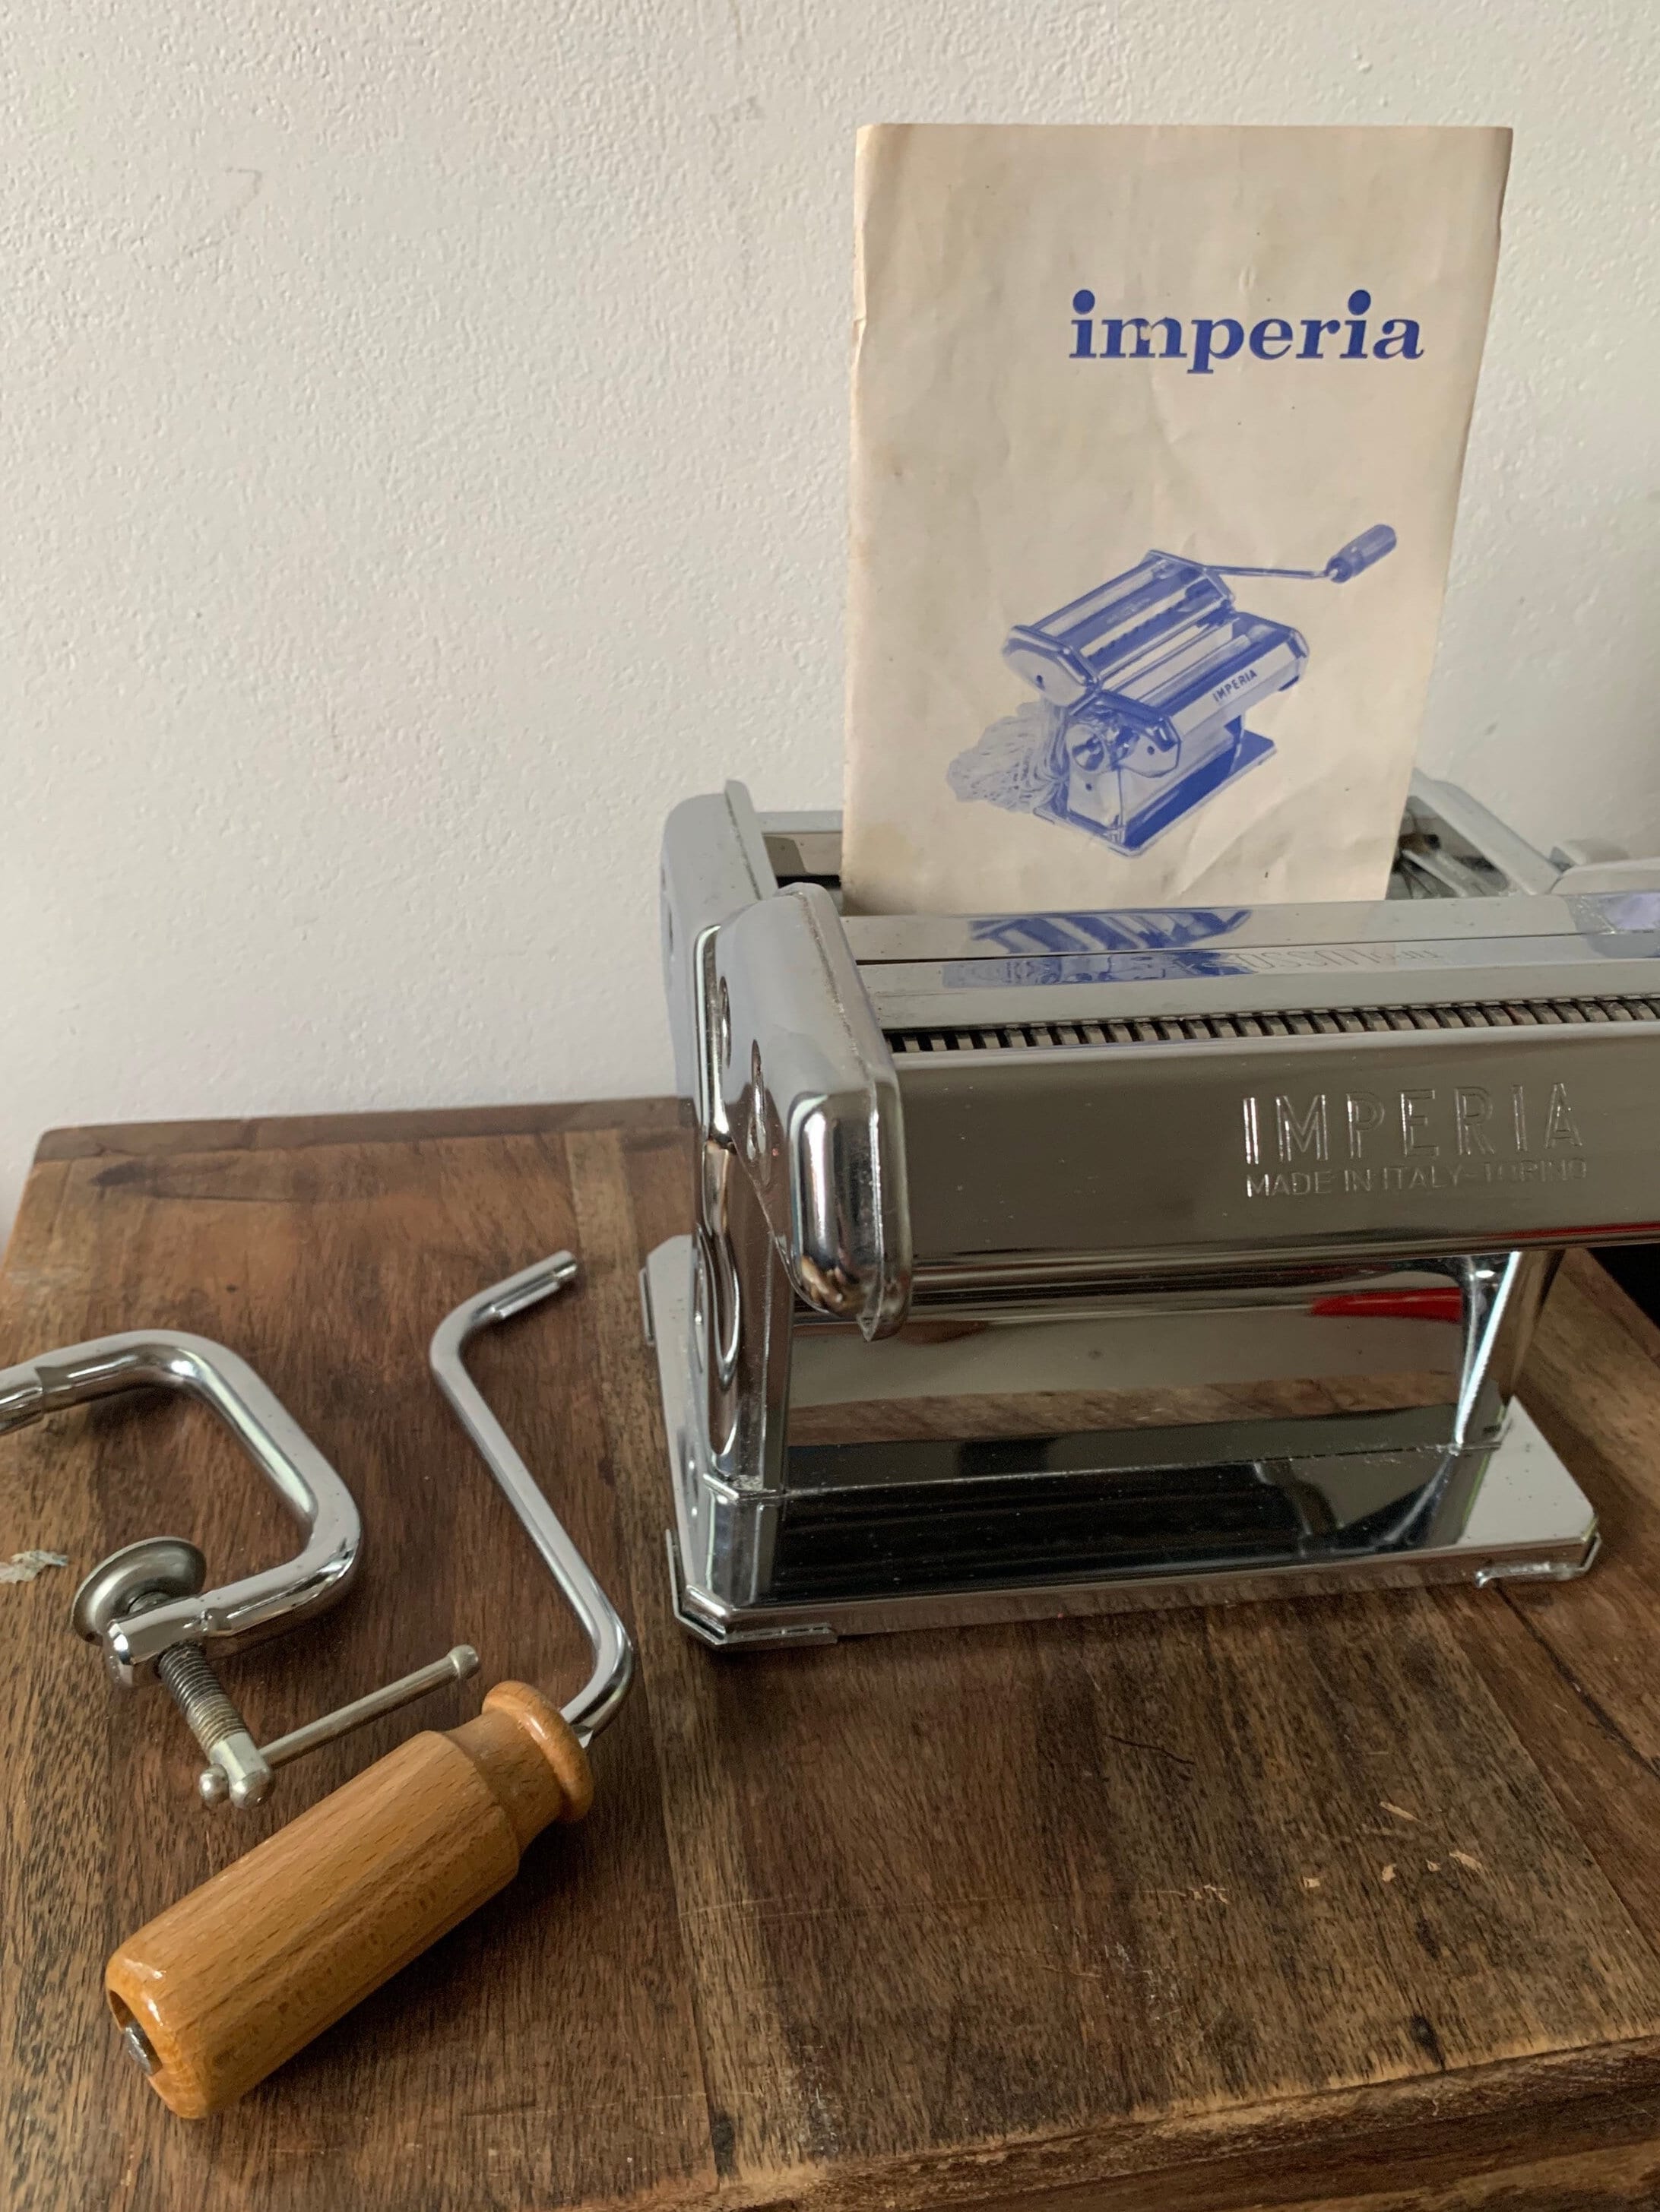 Imperia - Pasta Machine